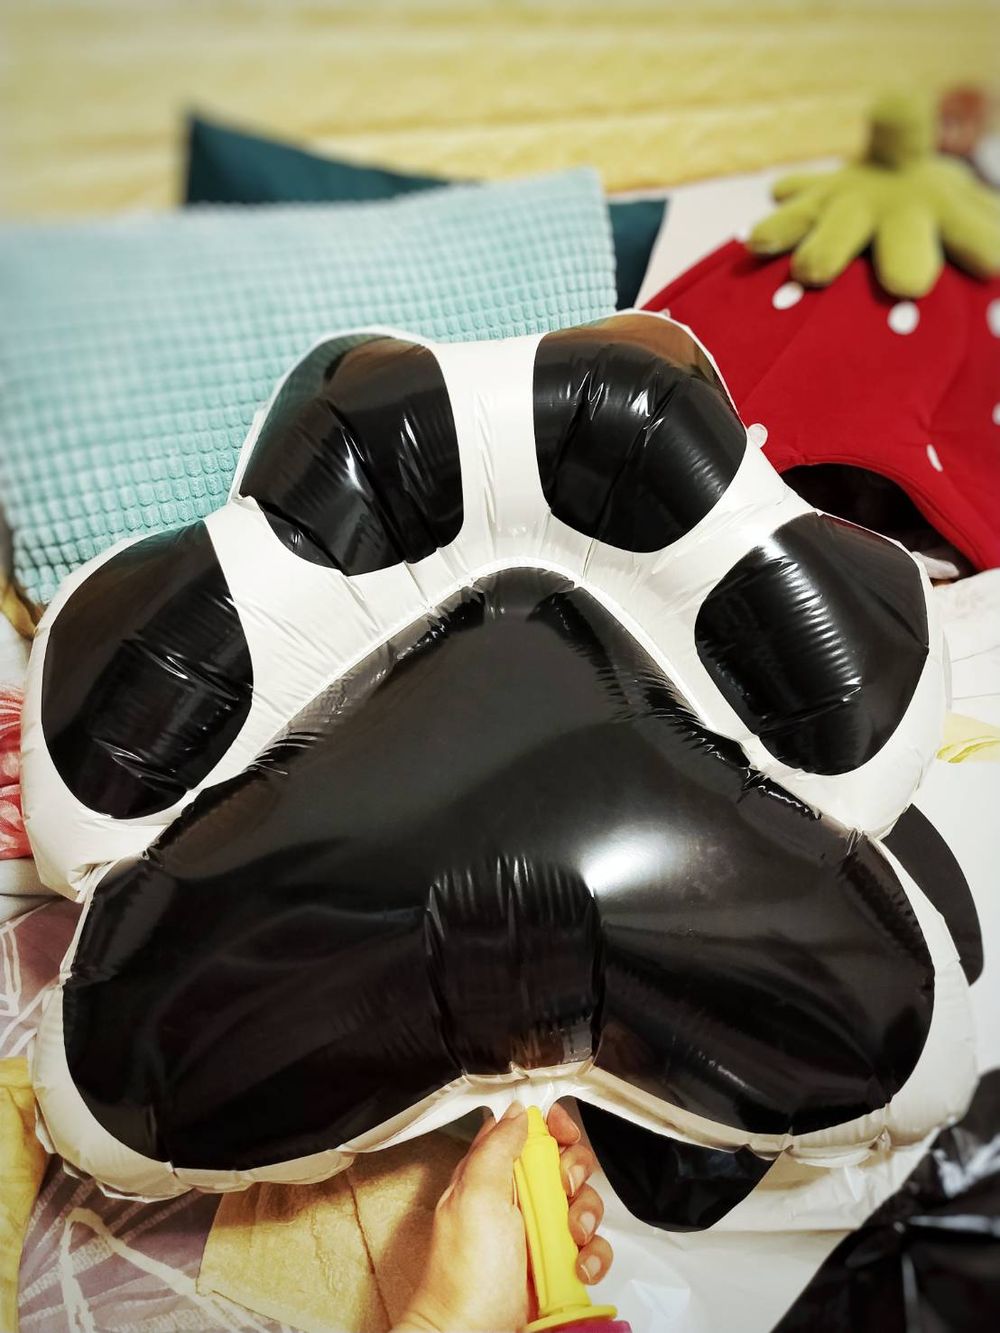 【節慶氣球裝置藝術布置】狗狗生日派對氣球「動森主題」套裝組合 KNJ氣球商城 吃貨旅遊作家水靜葳 (3)